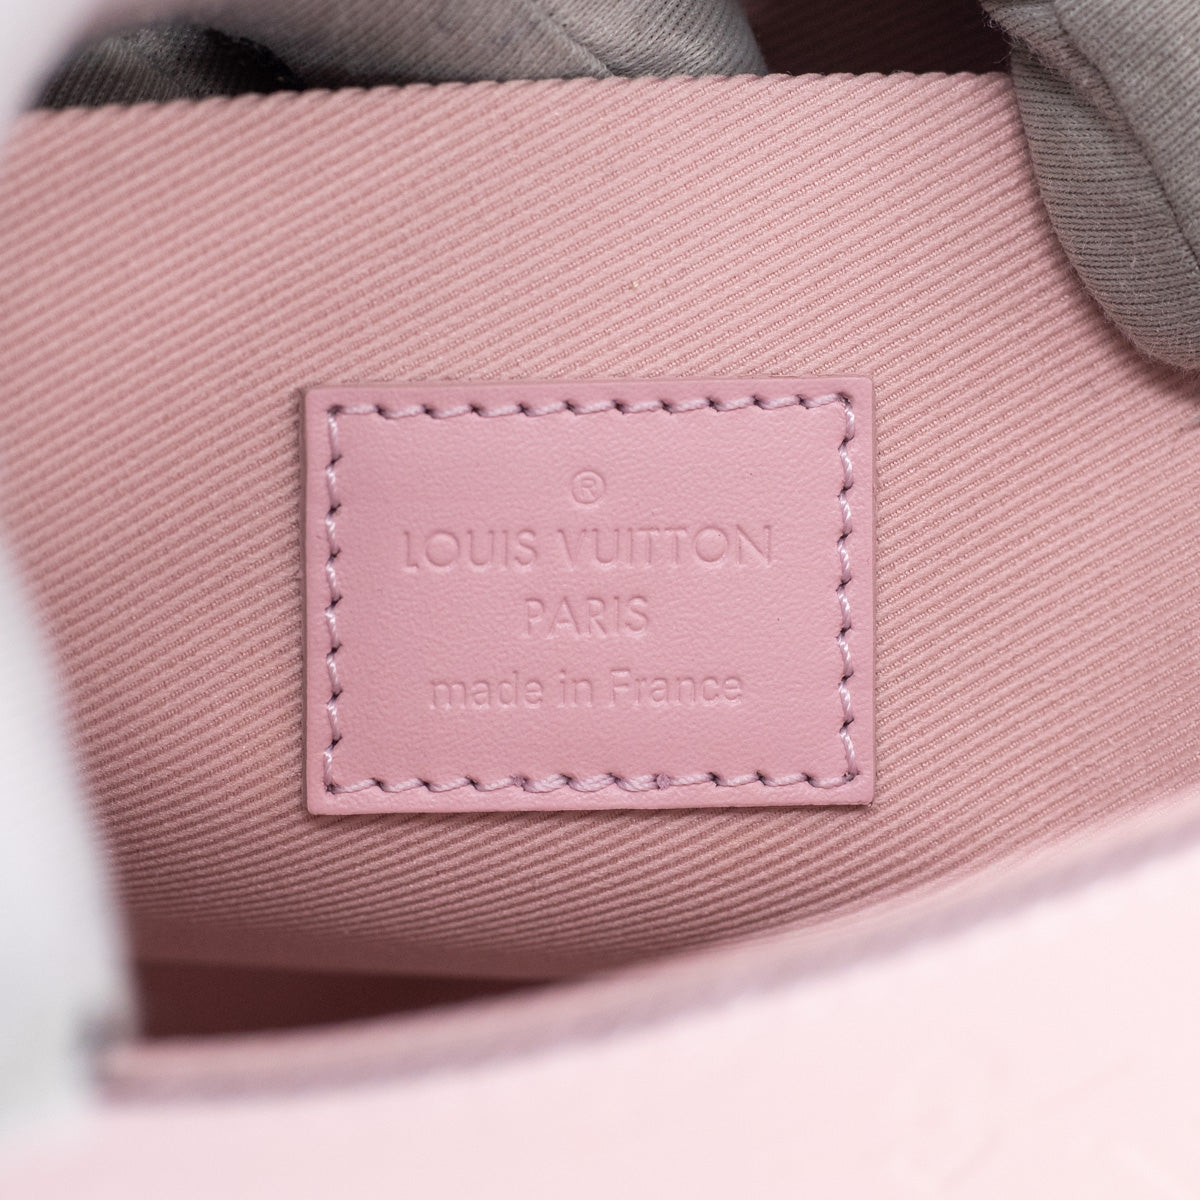 Louis Vuitton Pochette Felicie Rose Ballerine with Inserts White Damie -  MyDesignerly